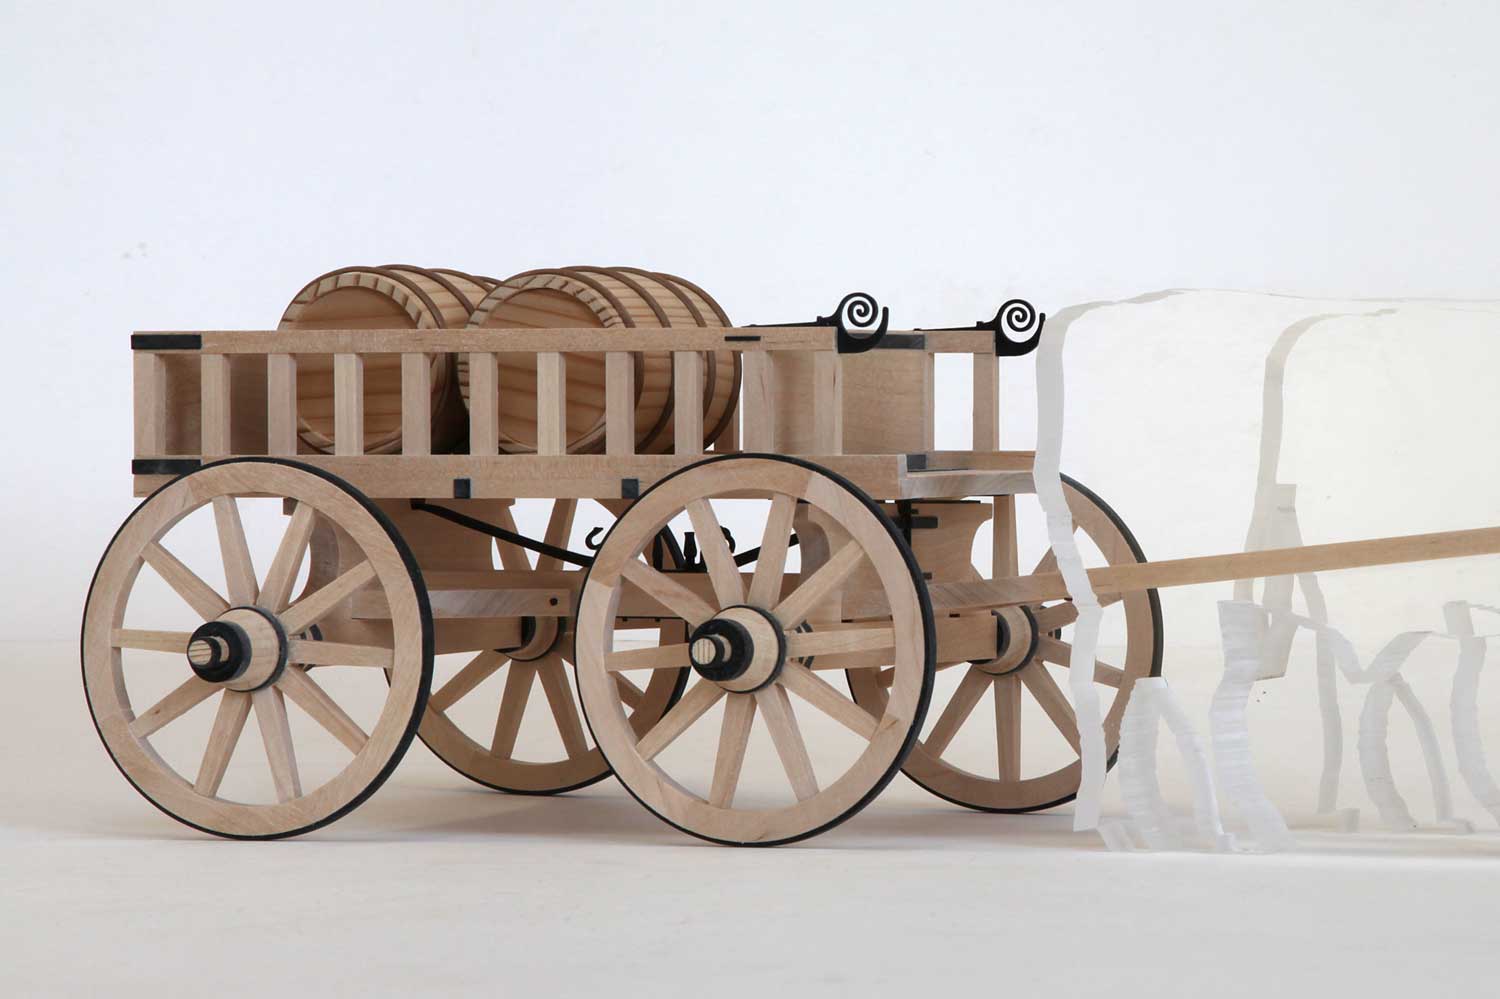 Modellbau Architektur Ausstellungsmodell Römerwagen